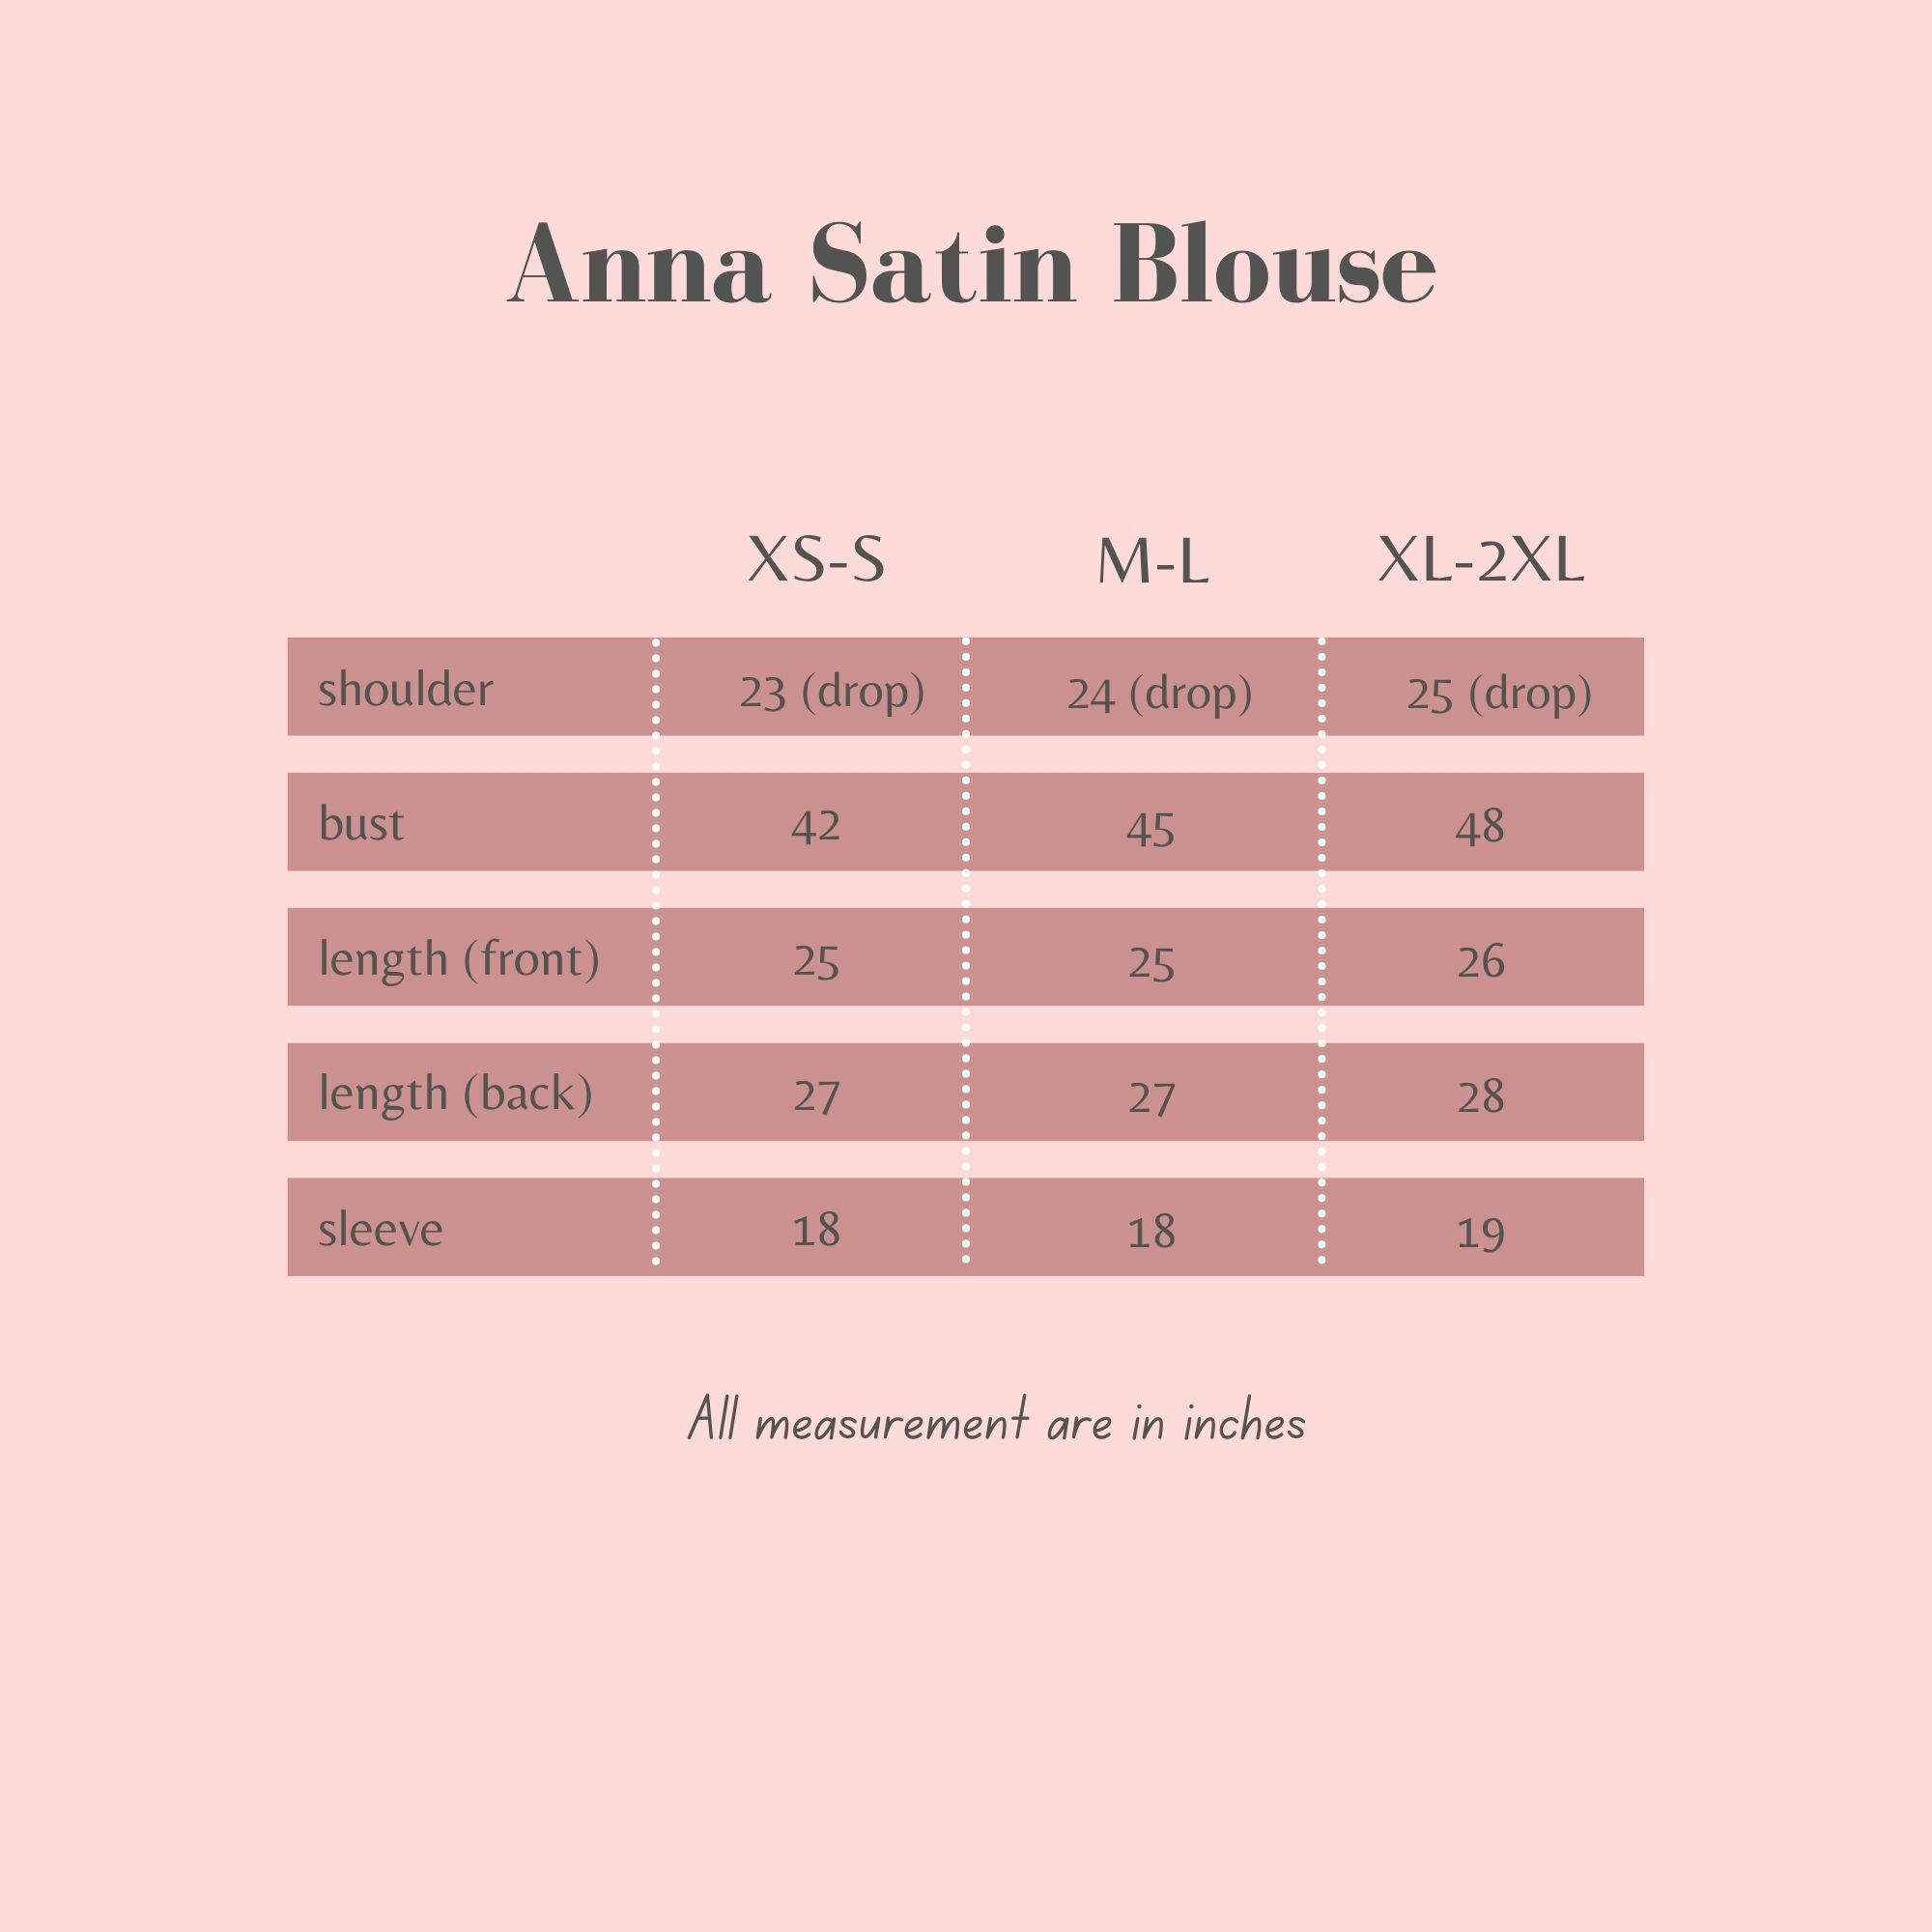 Anna Satin Blouse